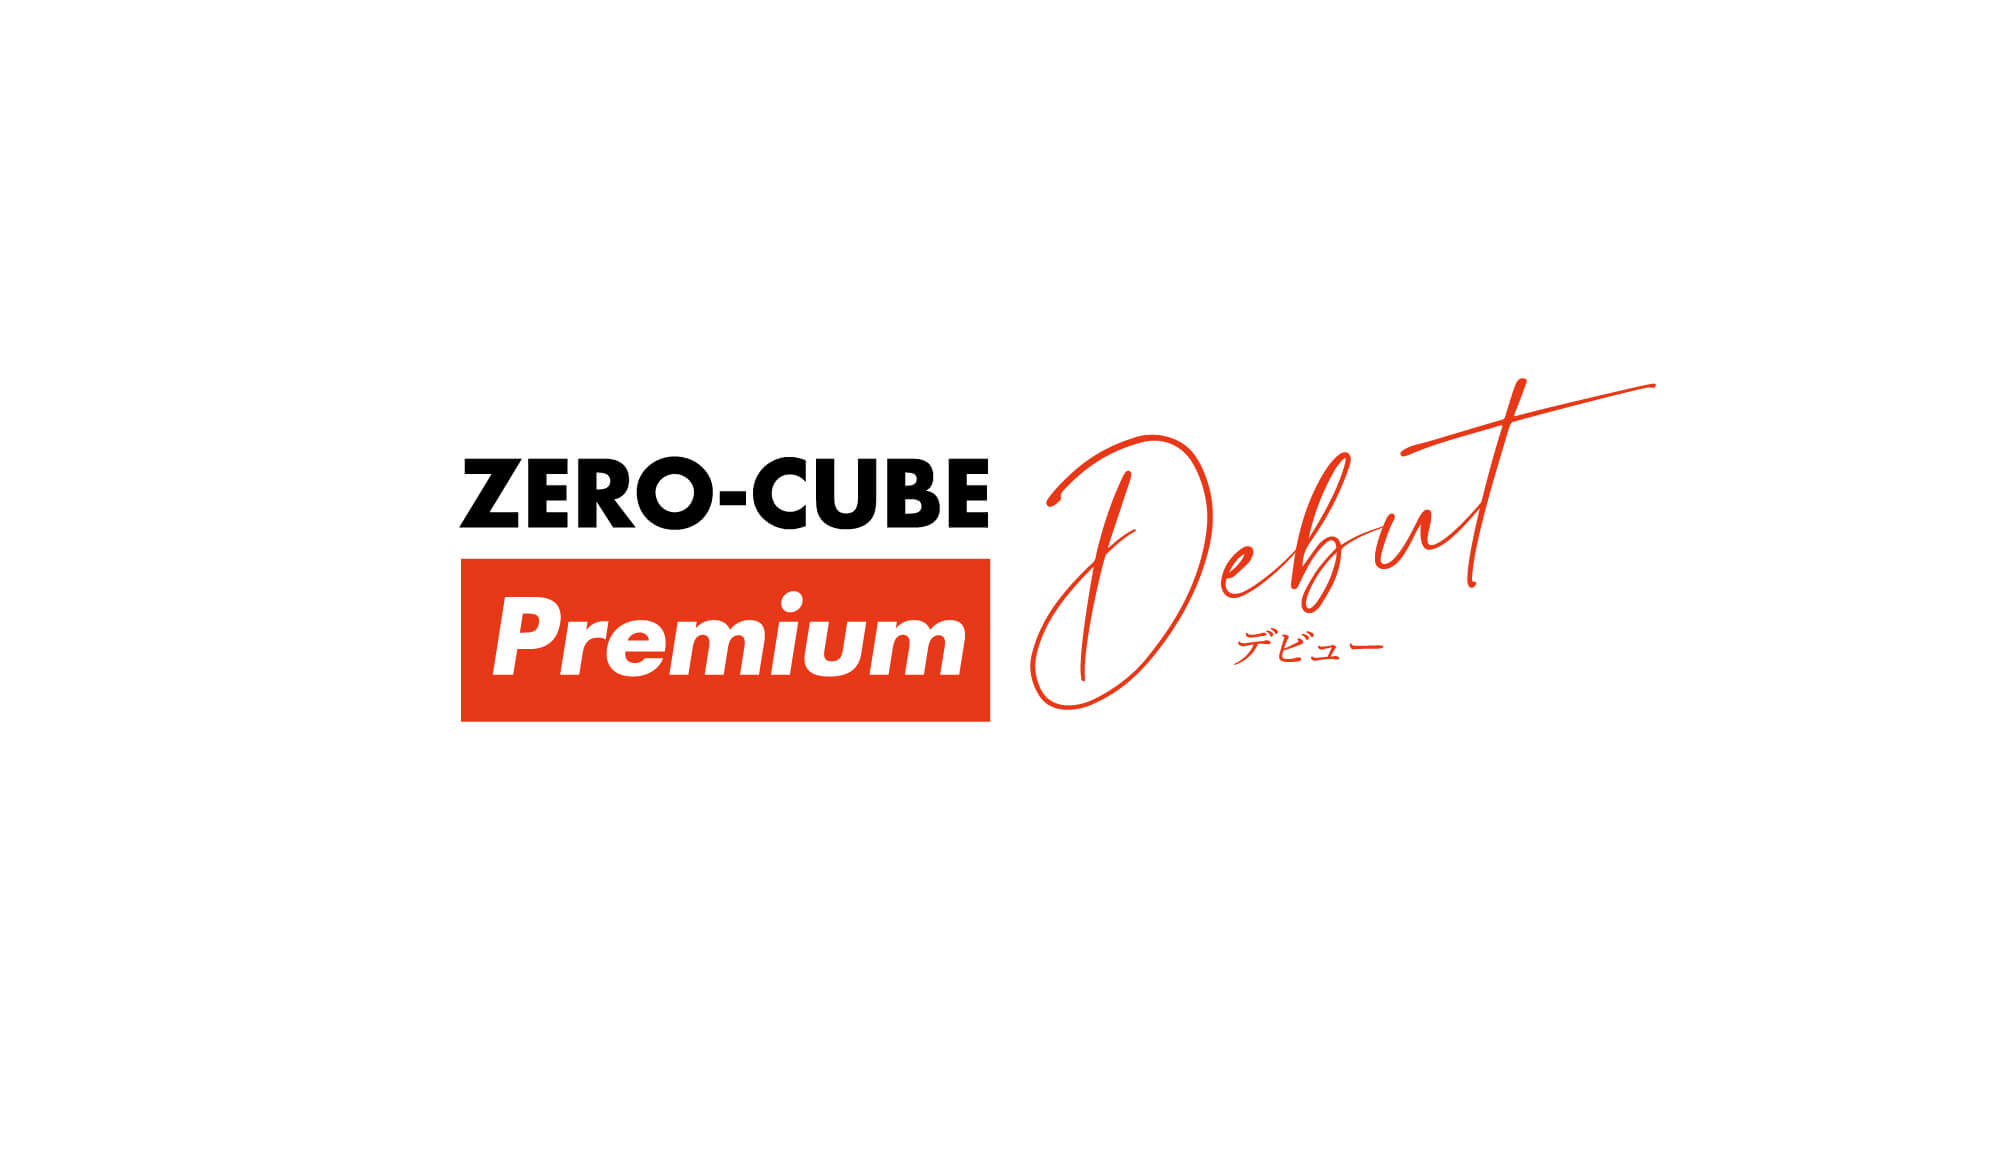 ZERO-CUBE BETSUDAI 60th Anniversary MODEL